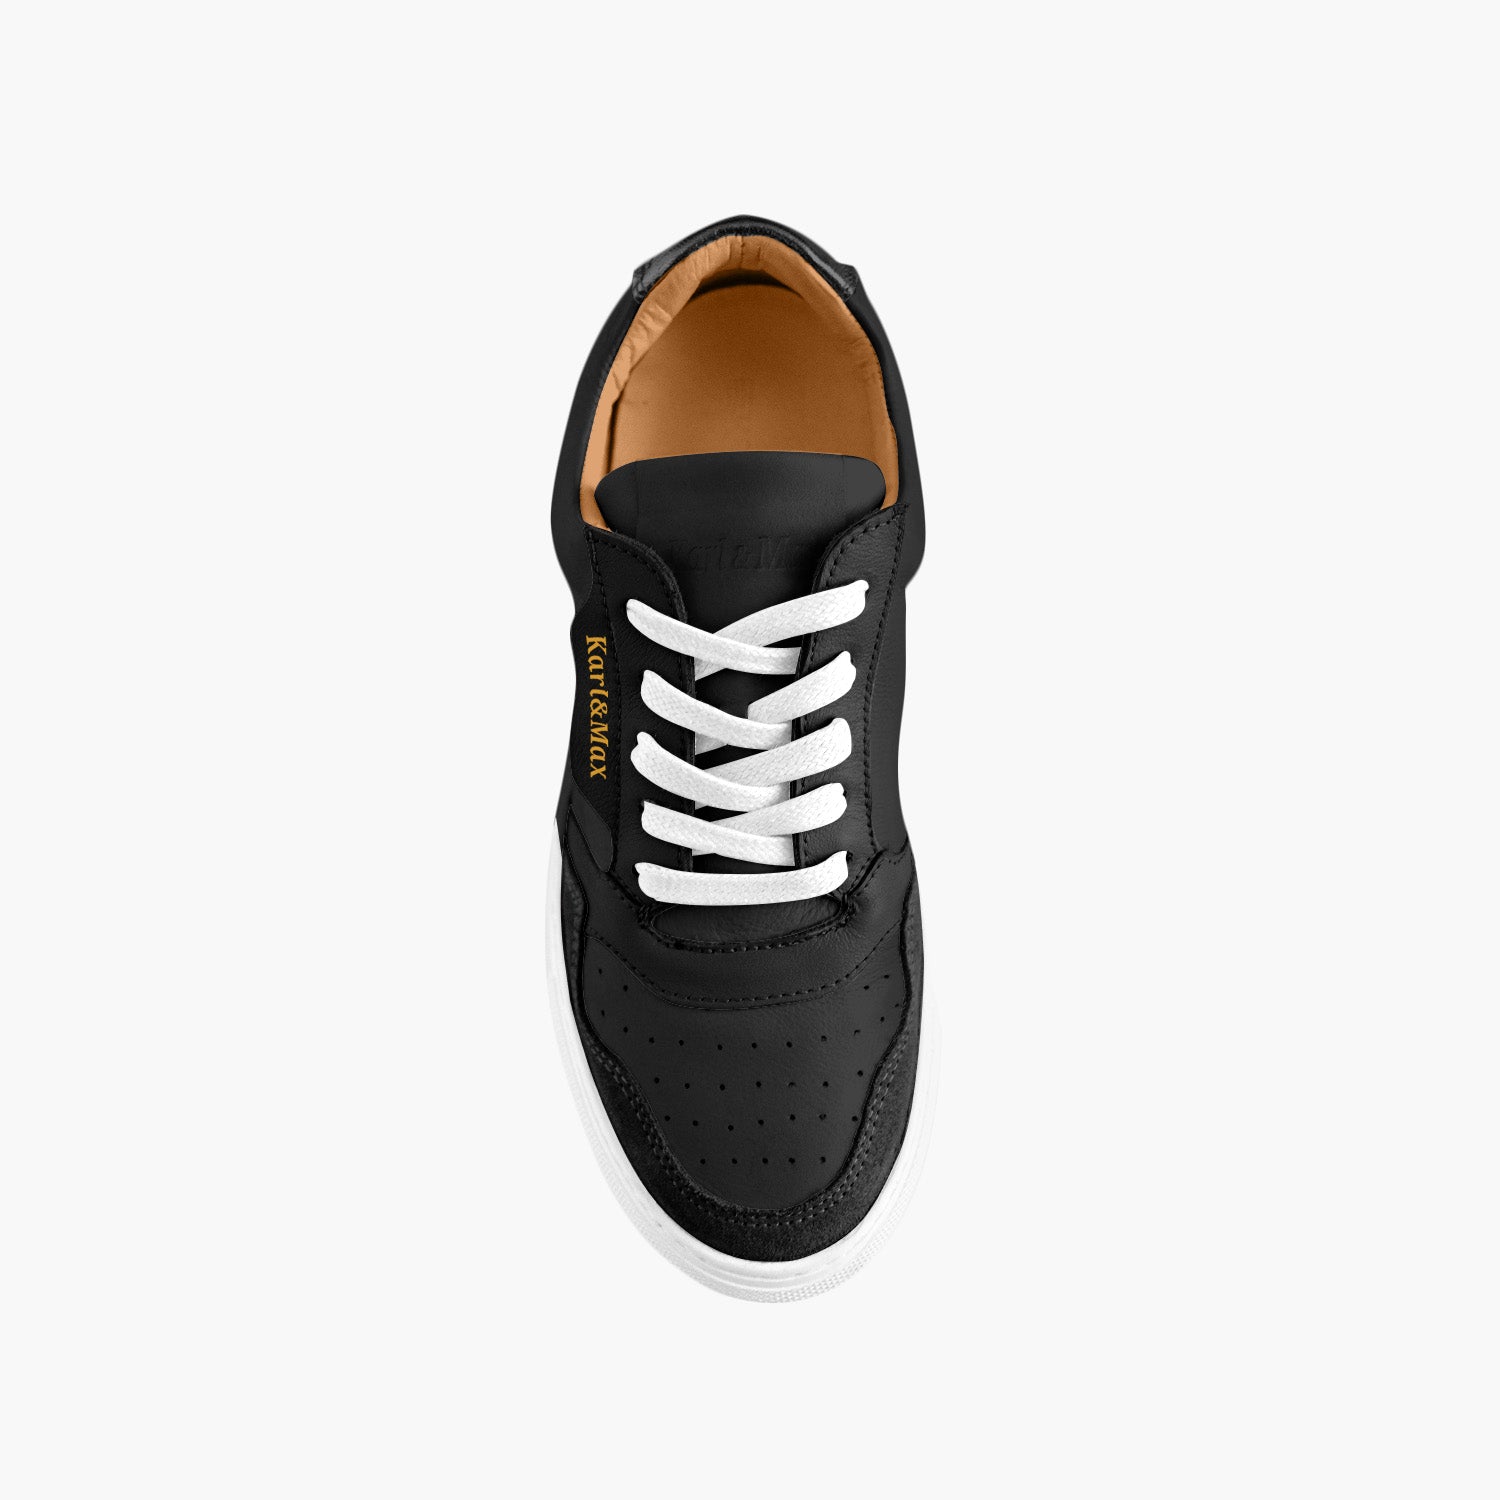 Chaussures cuir noir confort unisex anti-dérapante